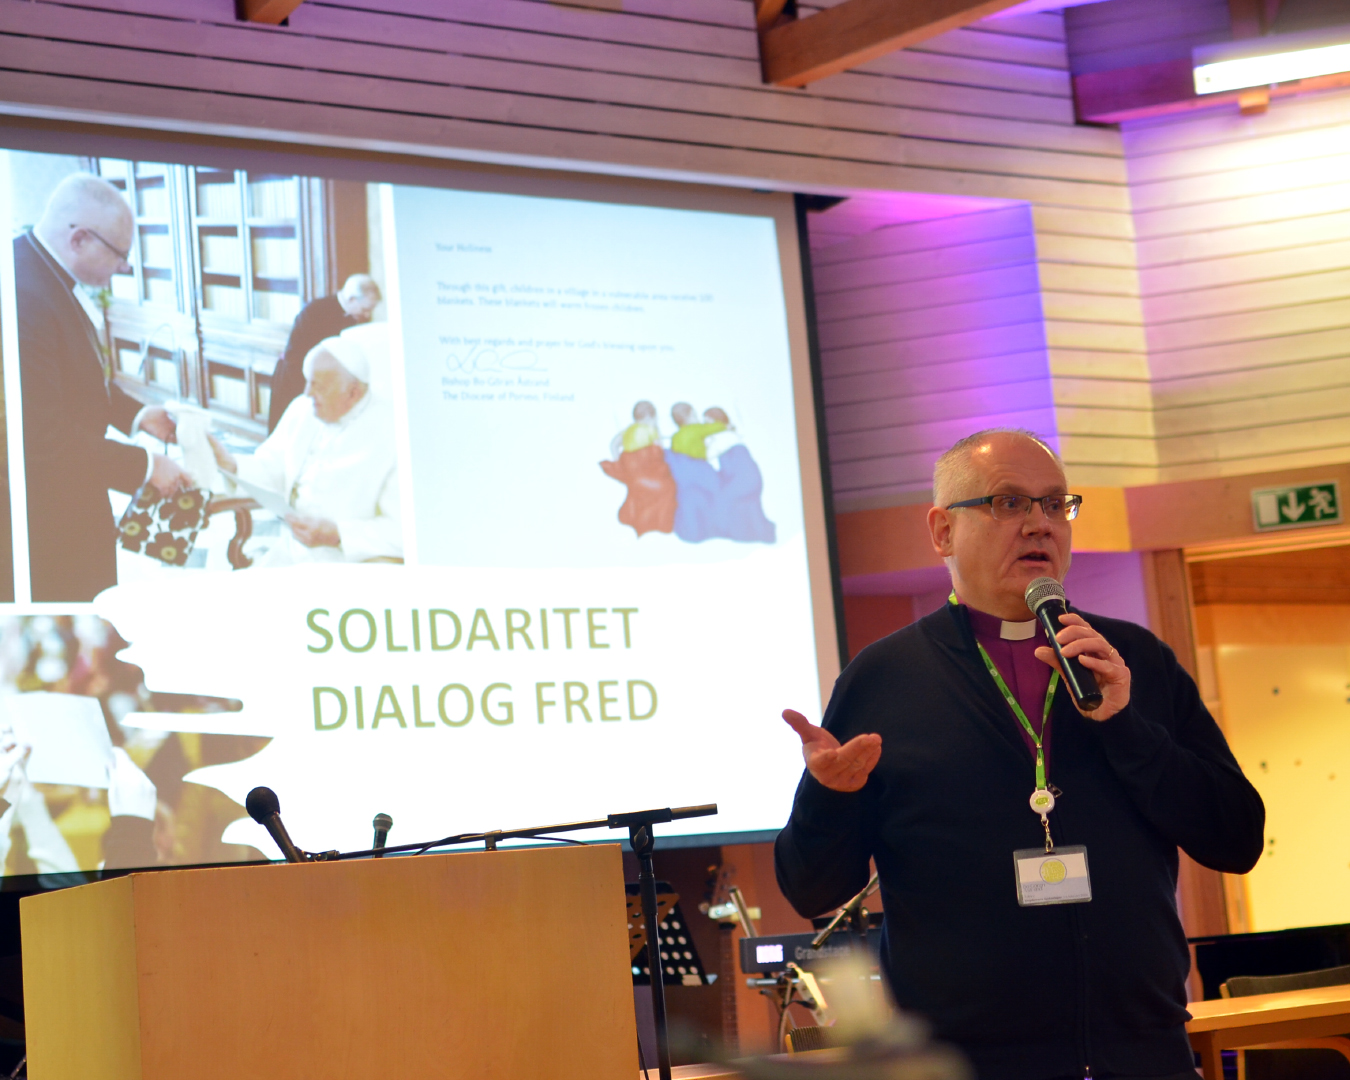 En biskop talar i mikrofon framför en skärm med texten solidaritet, dialog, fred.